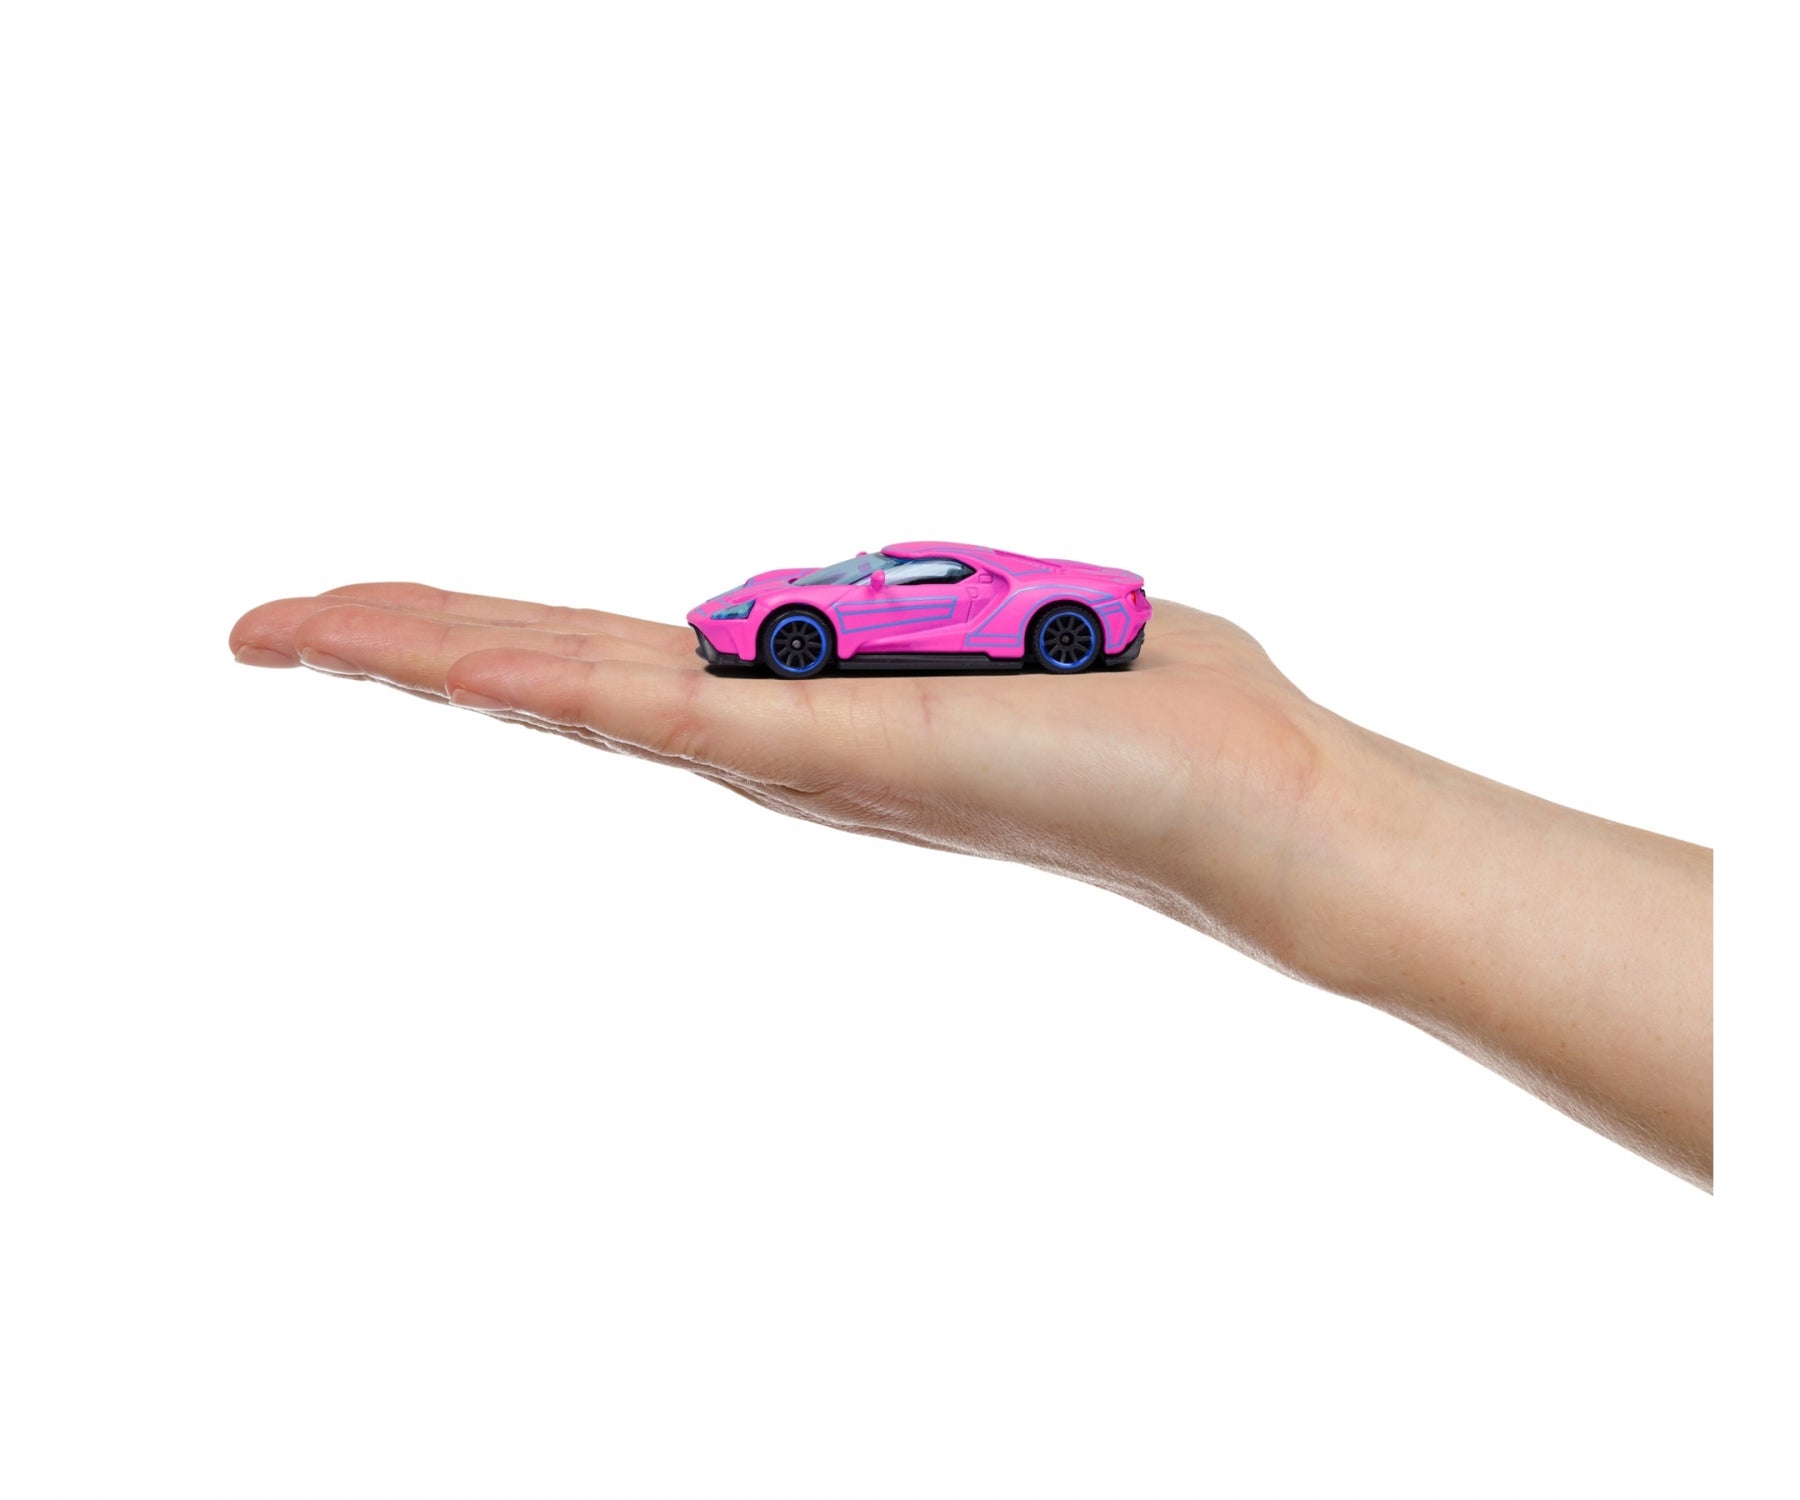 Majorette Light Racer Series 5 Car Gift Set For Kids Ages 3+